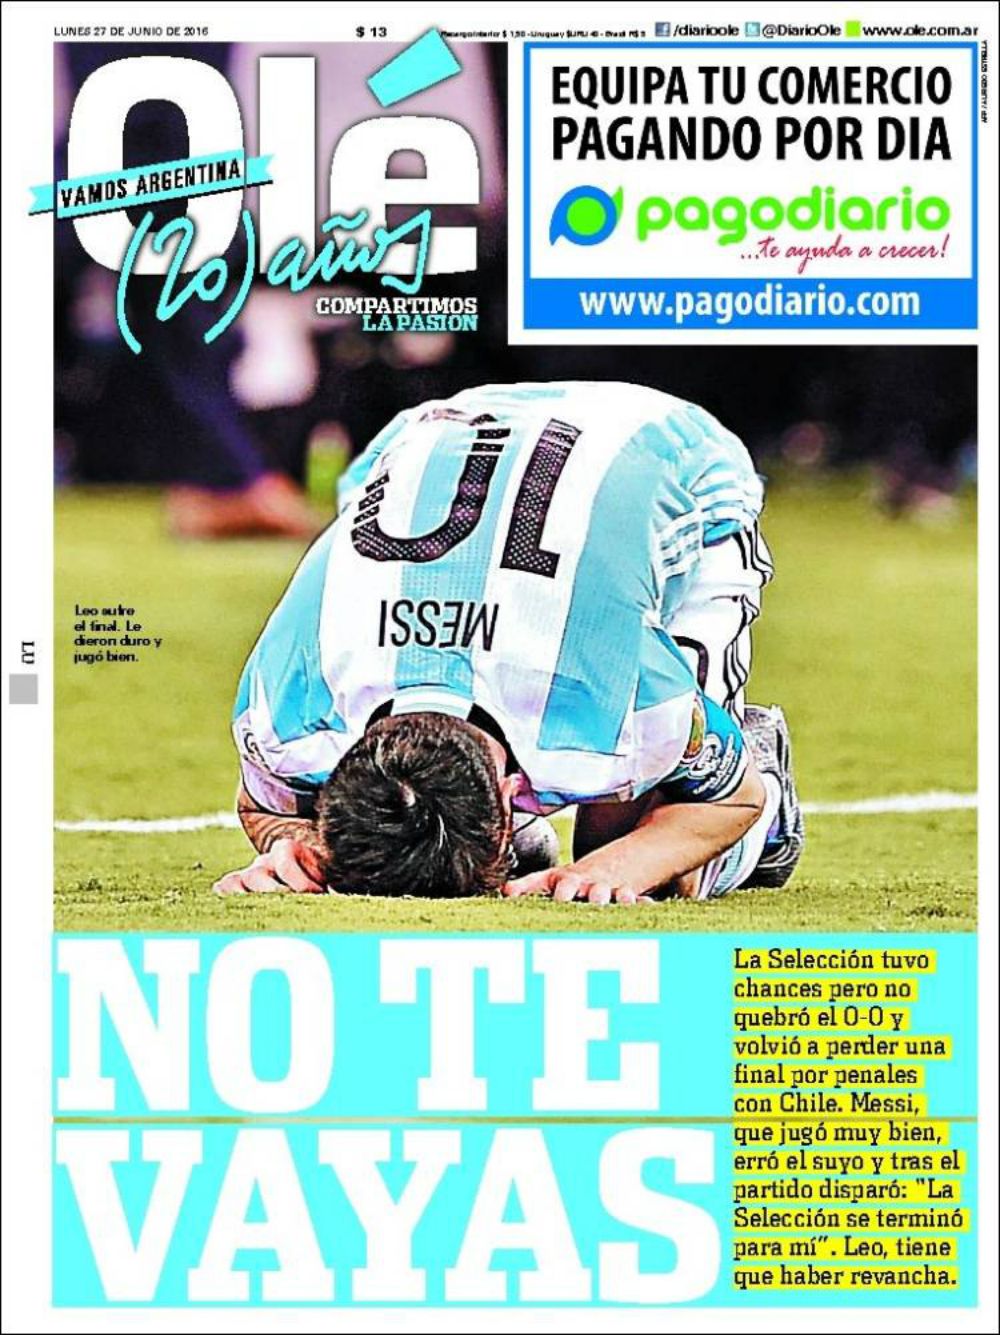 La derrota de Argentina y la victoria de Chile en la prensa